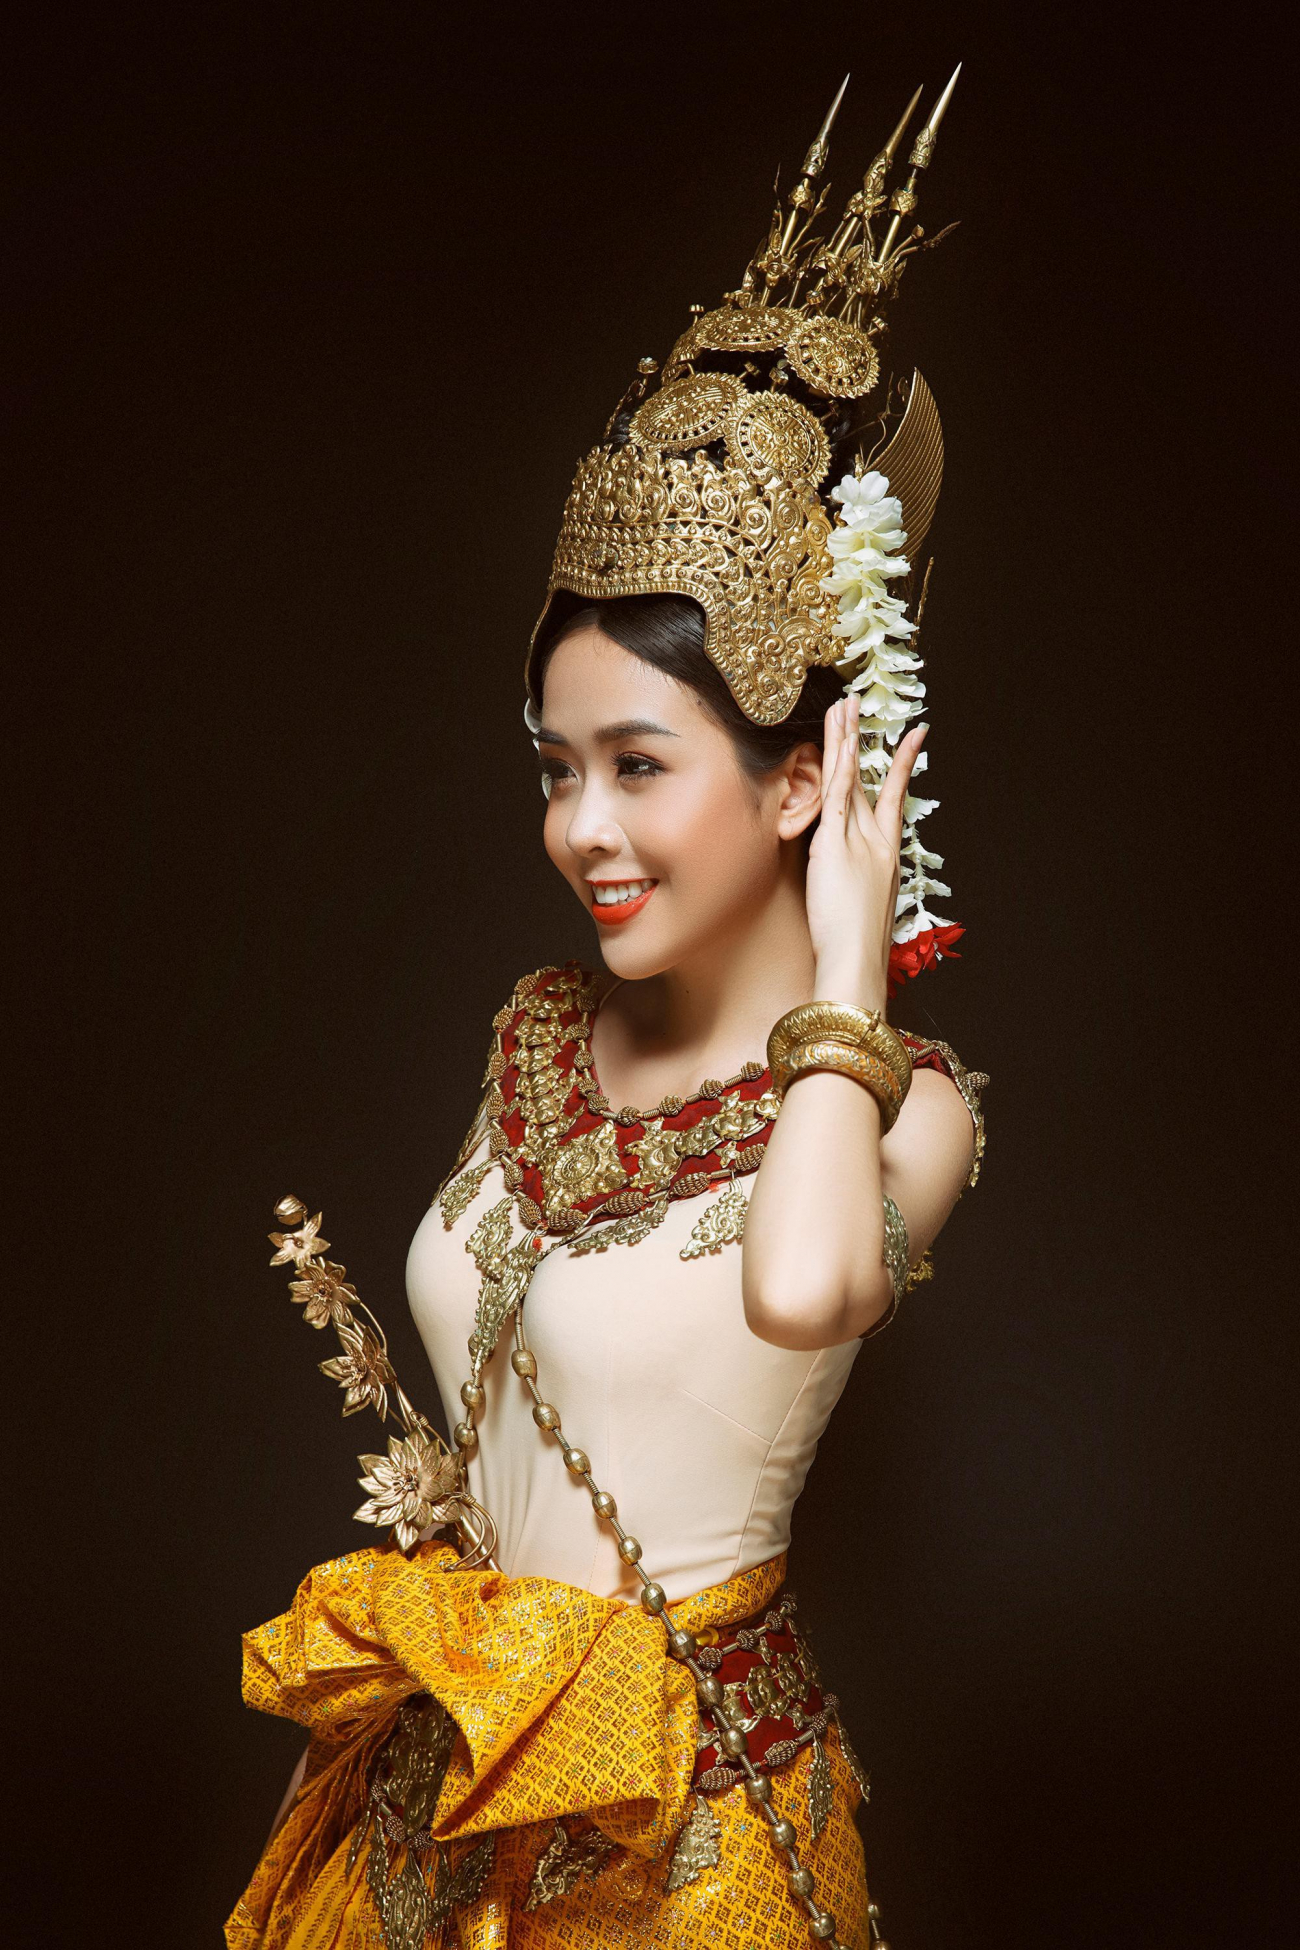 Hoa khôi sinh viên tp cần thơ đẹp dịu dàng với trang phục khmer - 5